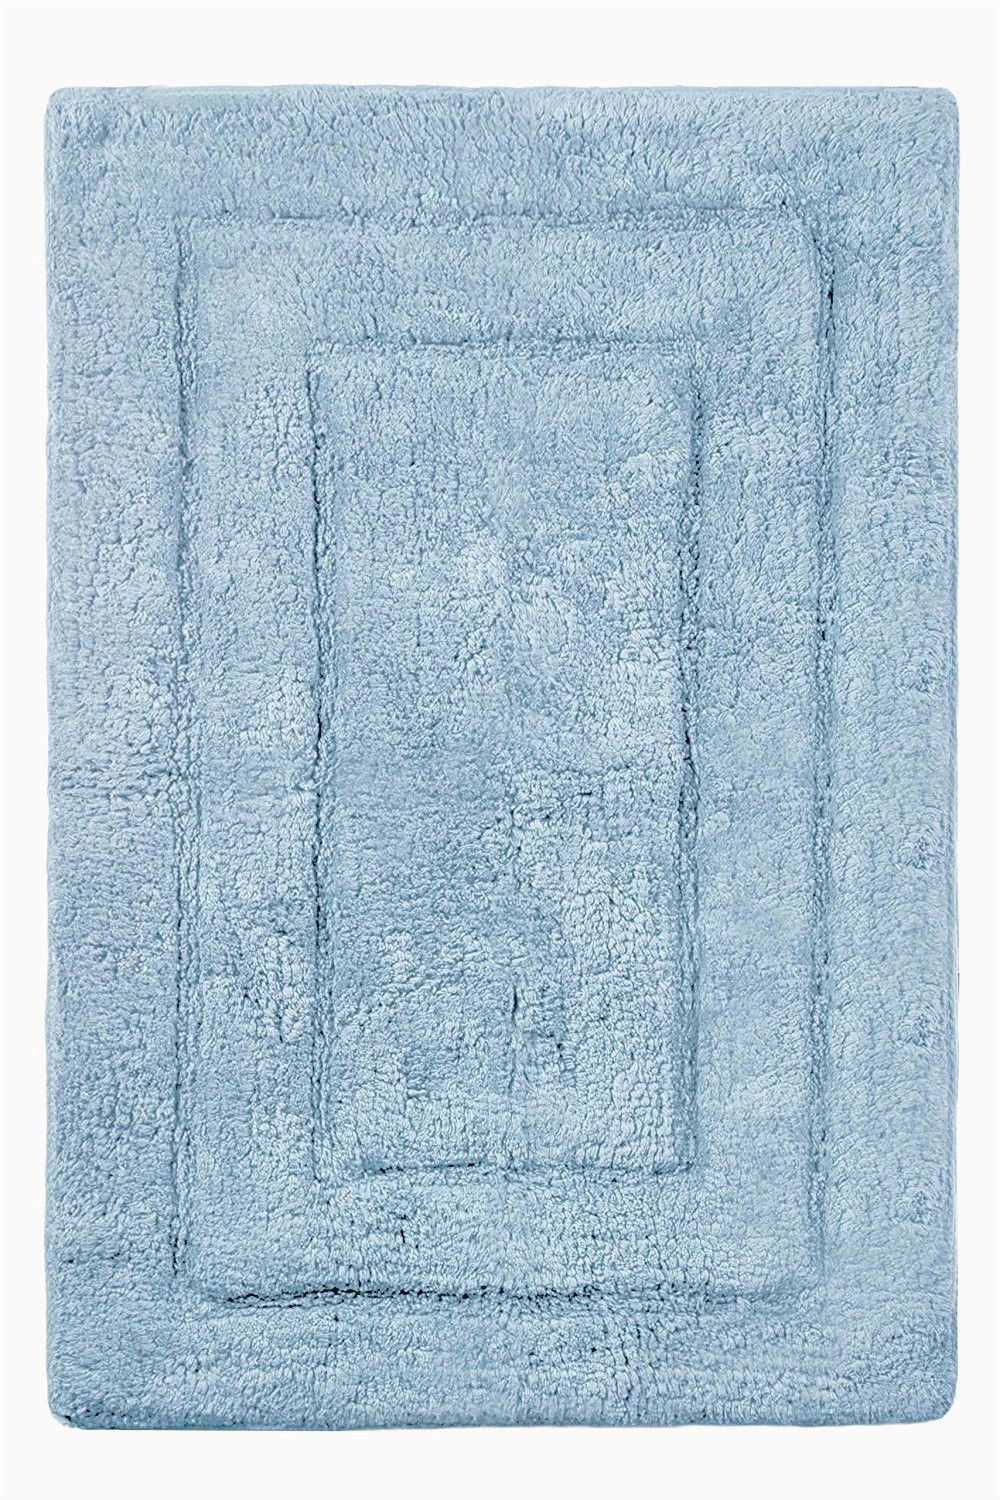 Powder Blue Bathroom Rugs Buy 24”x40” Powder Blue Archangel Ultra soft Rectangular